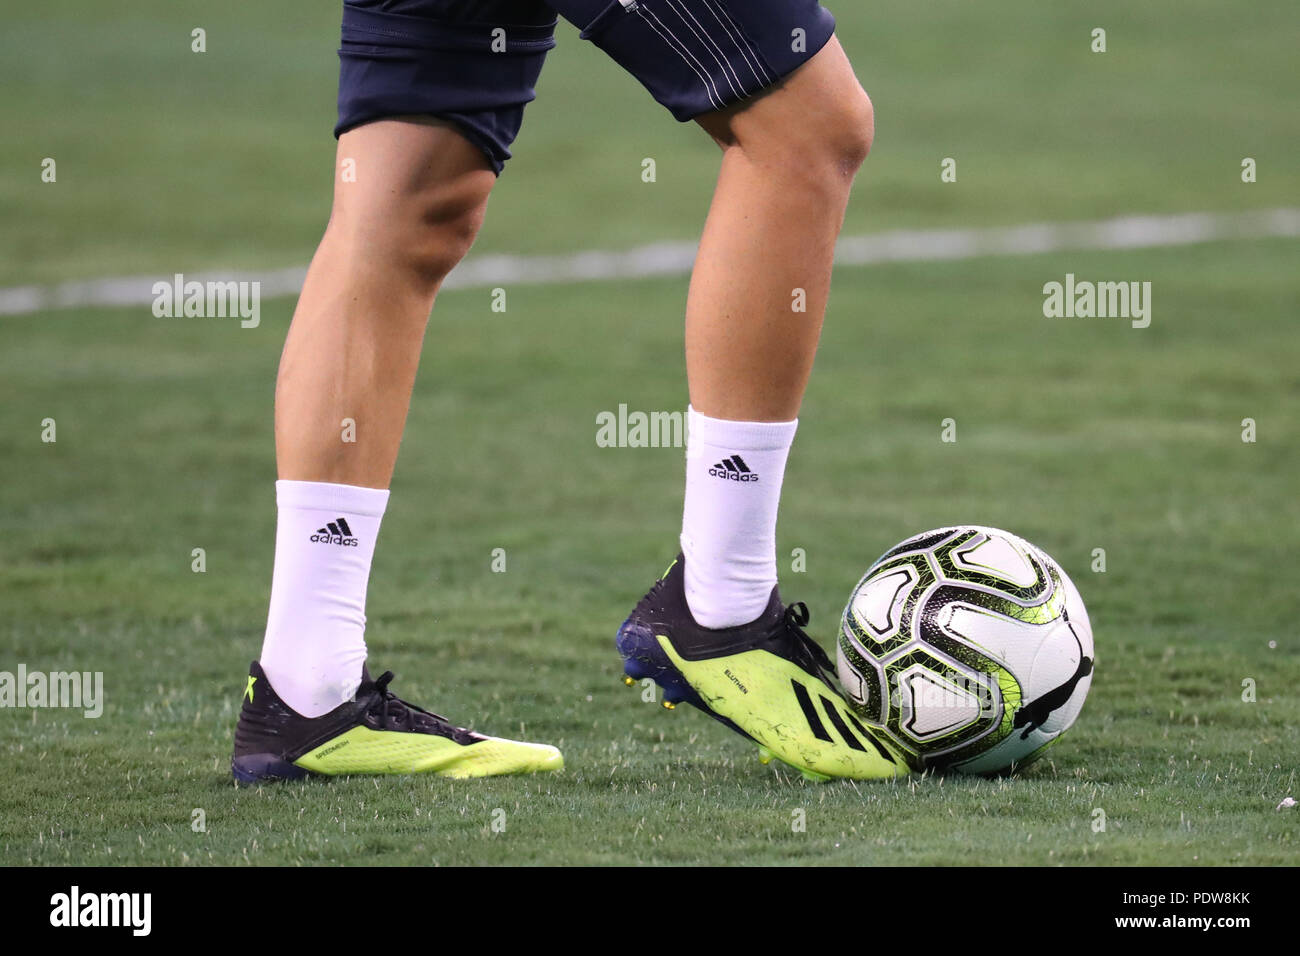 EAST Rutherford, Nueva Jersey - Agosto 7, 2018: el jugador profesional de fútbol lleva tacos Adidas durante el Real Madrid vs Roma juego en la ICC 2018 Fotografía de stock - Alamy